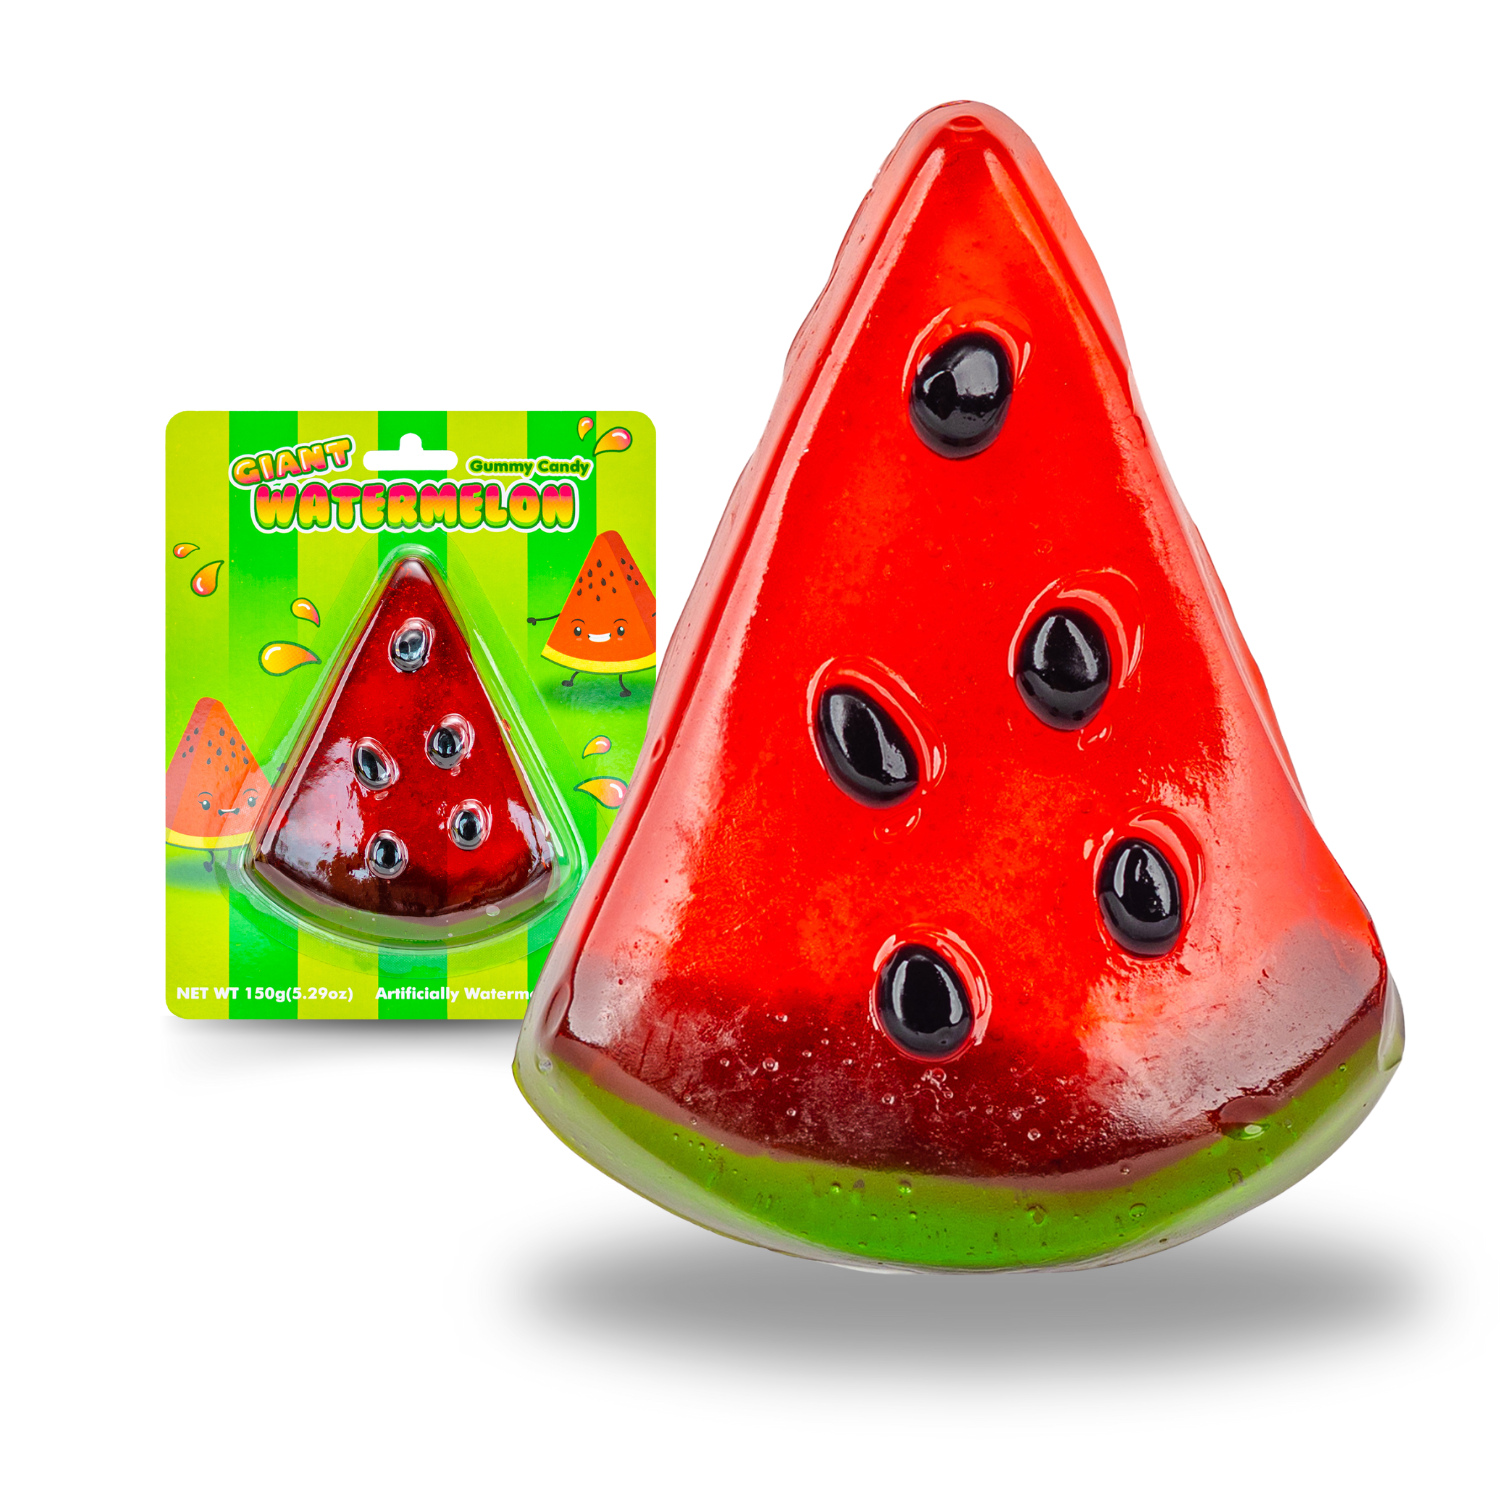 Giant Gummy Watermelon - 5oz